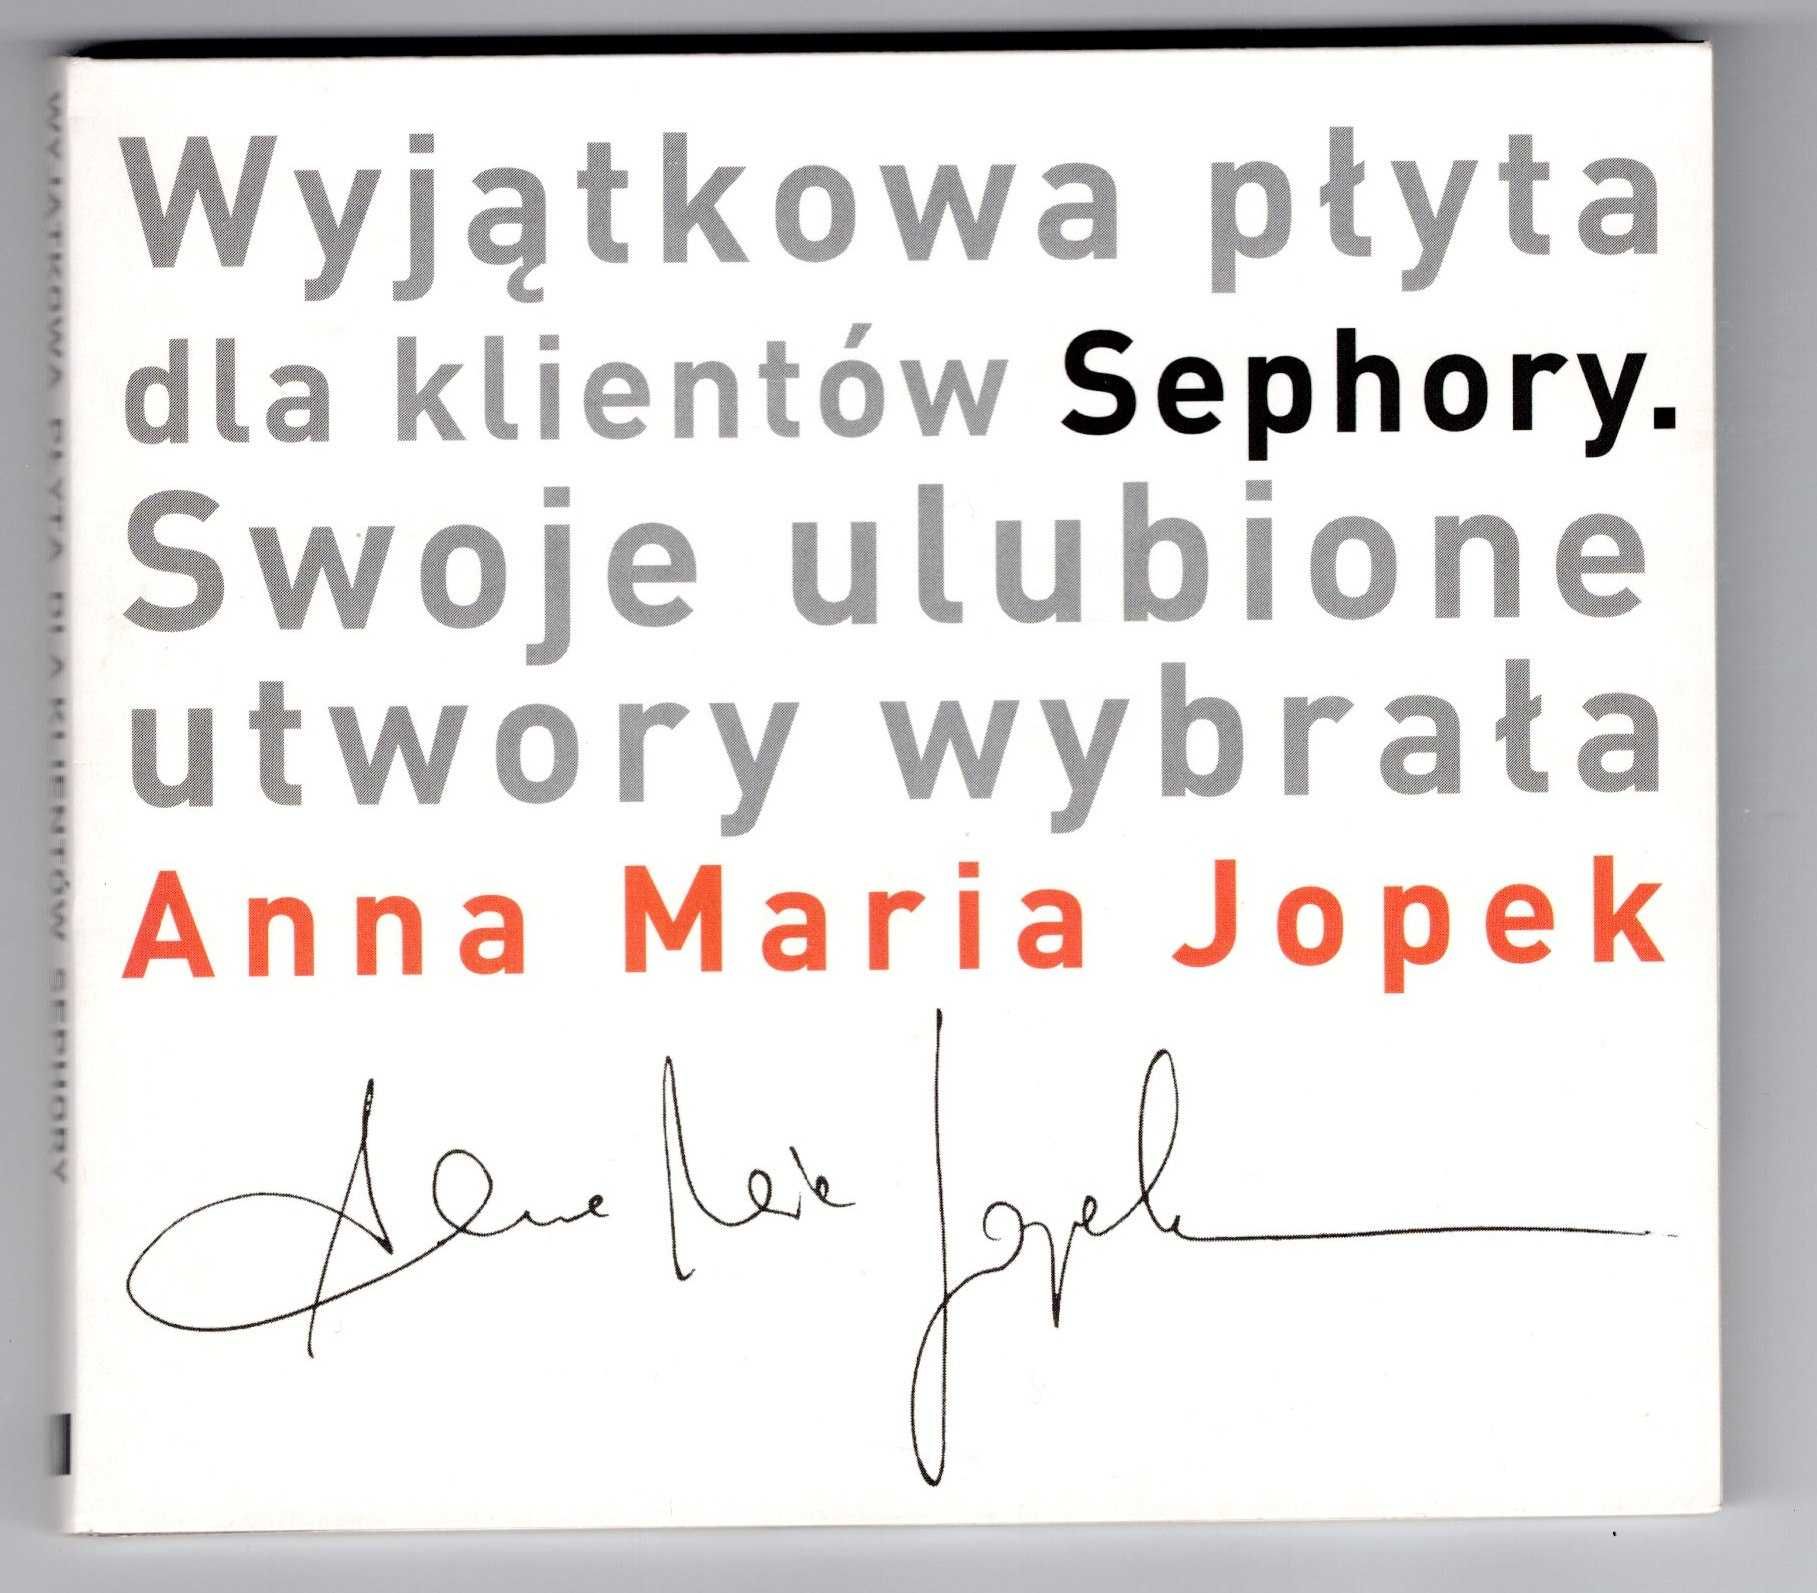 Wyjątkowa Płyta Dla Klientów Sephory (CD)  Anna Maria Jopek